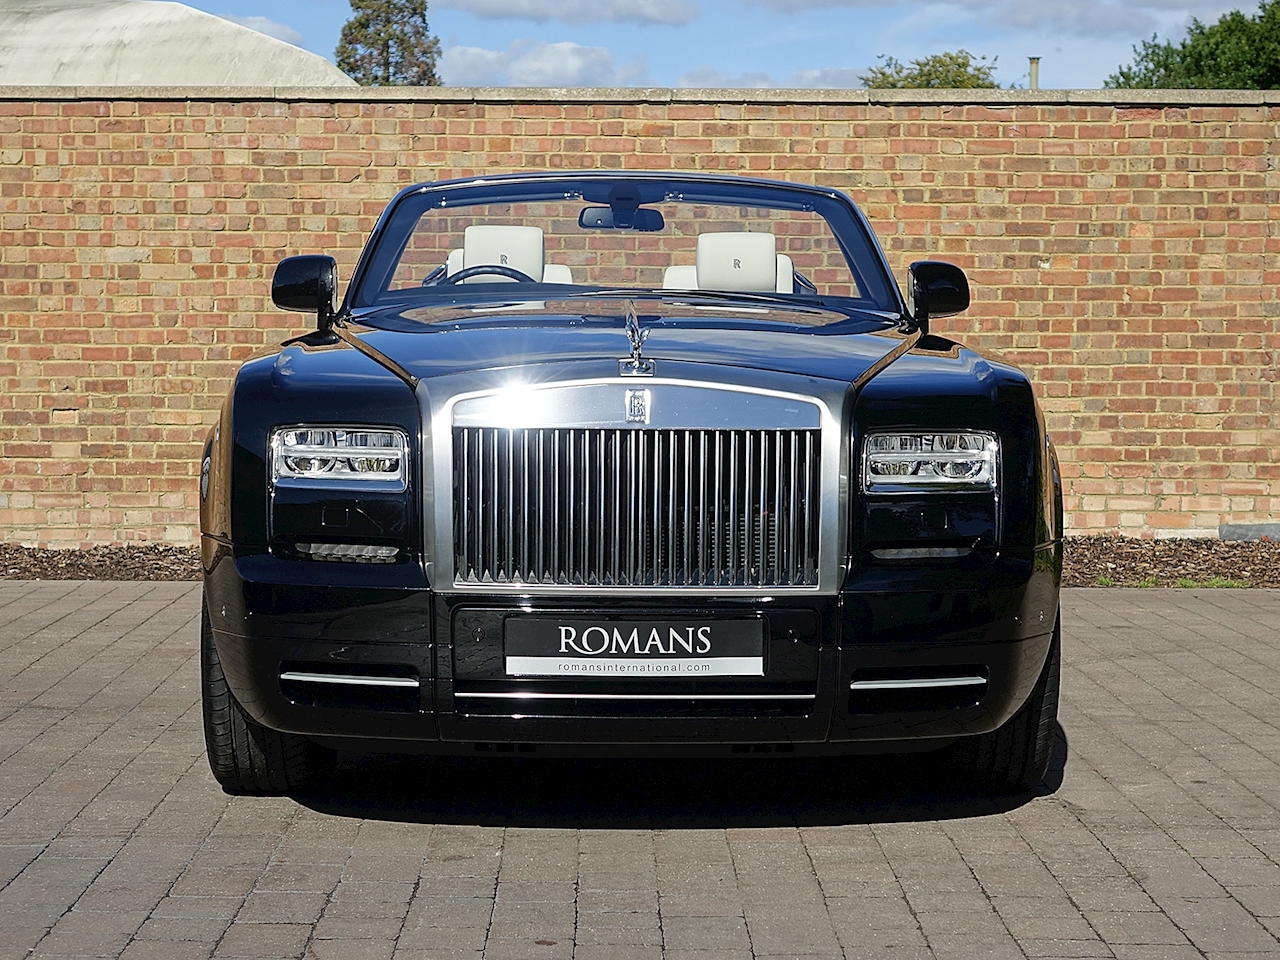 2014 RollsRoyce Phantom for Sale with Photos  CARFAX